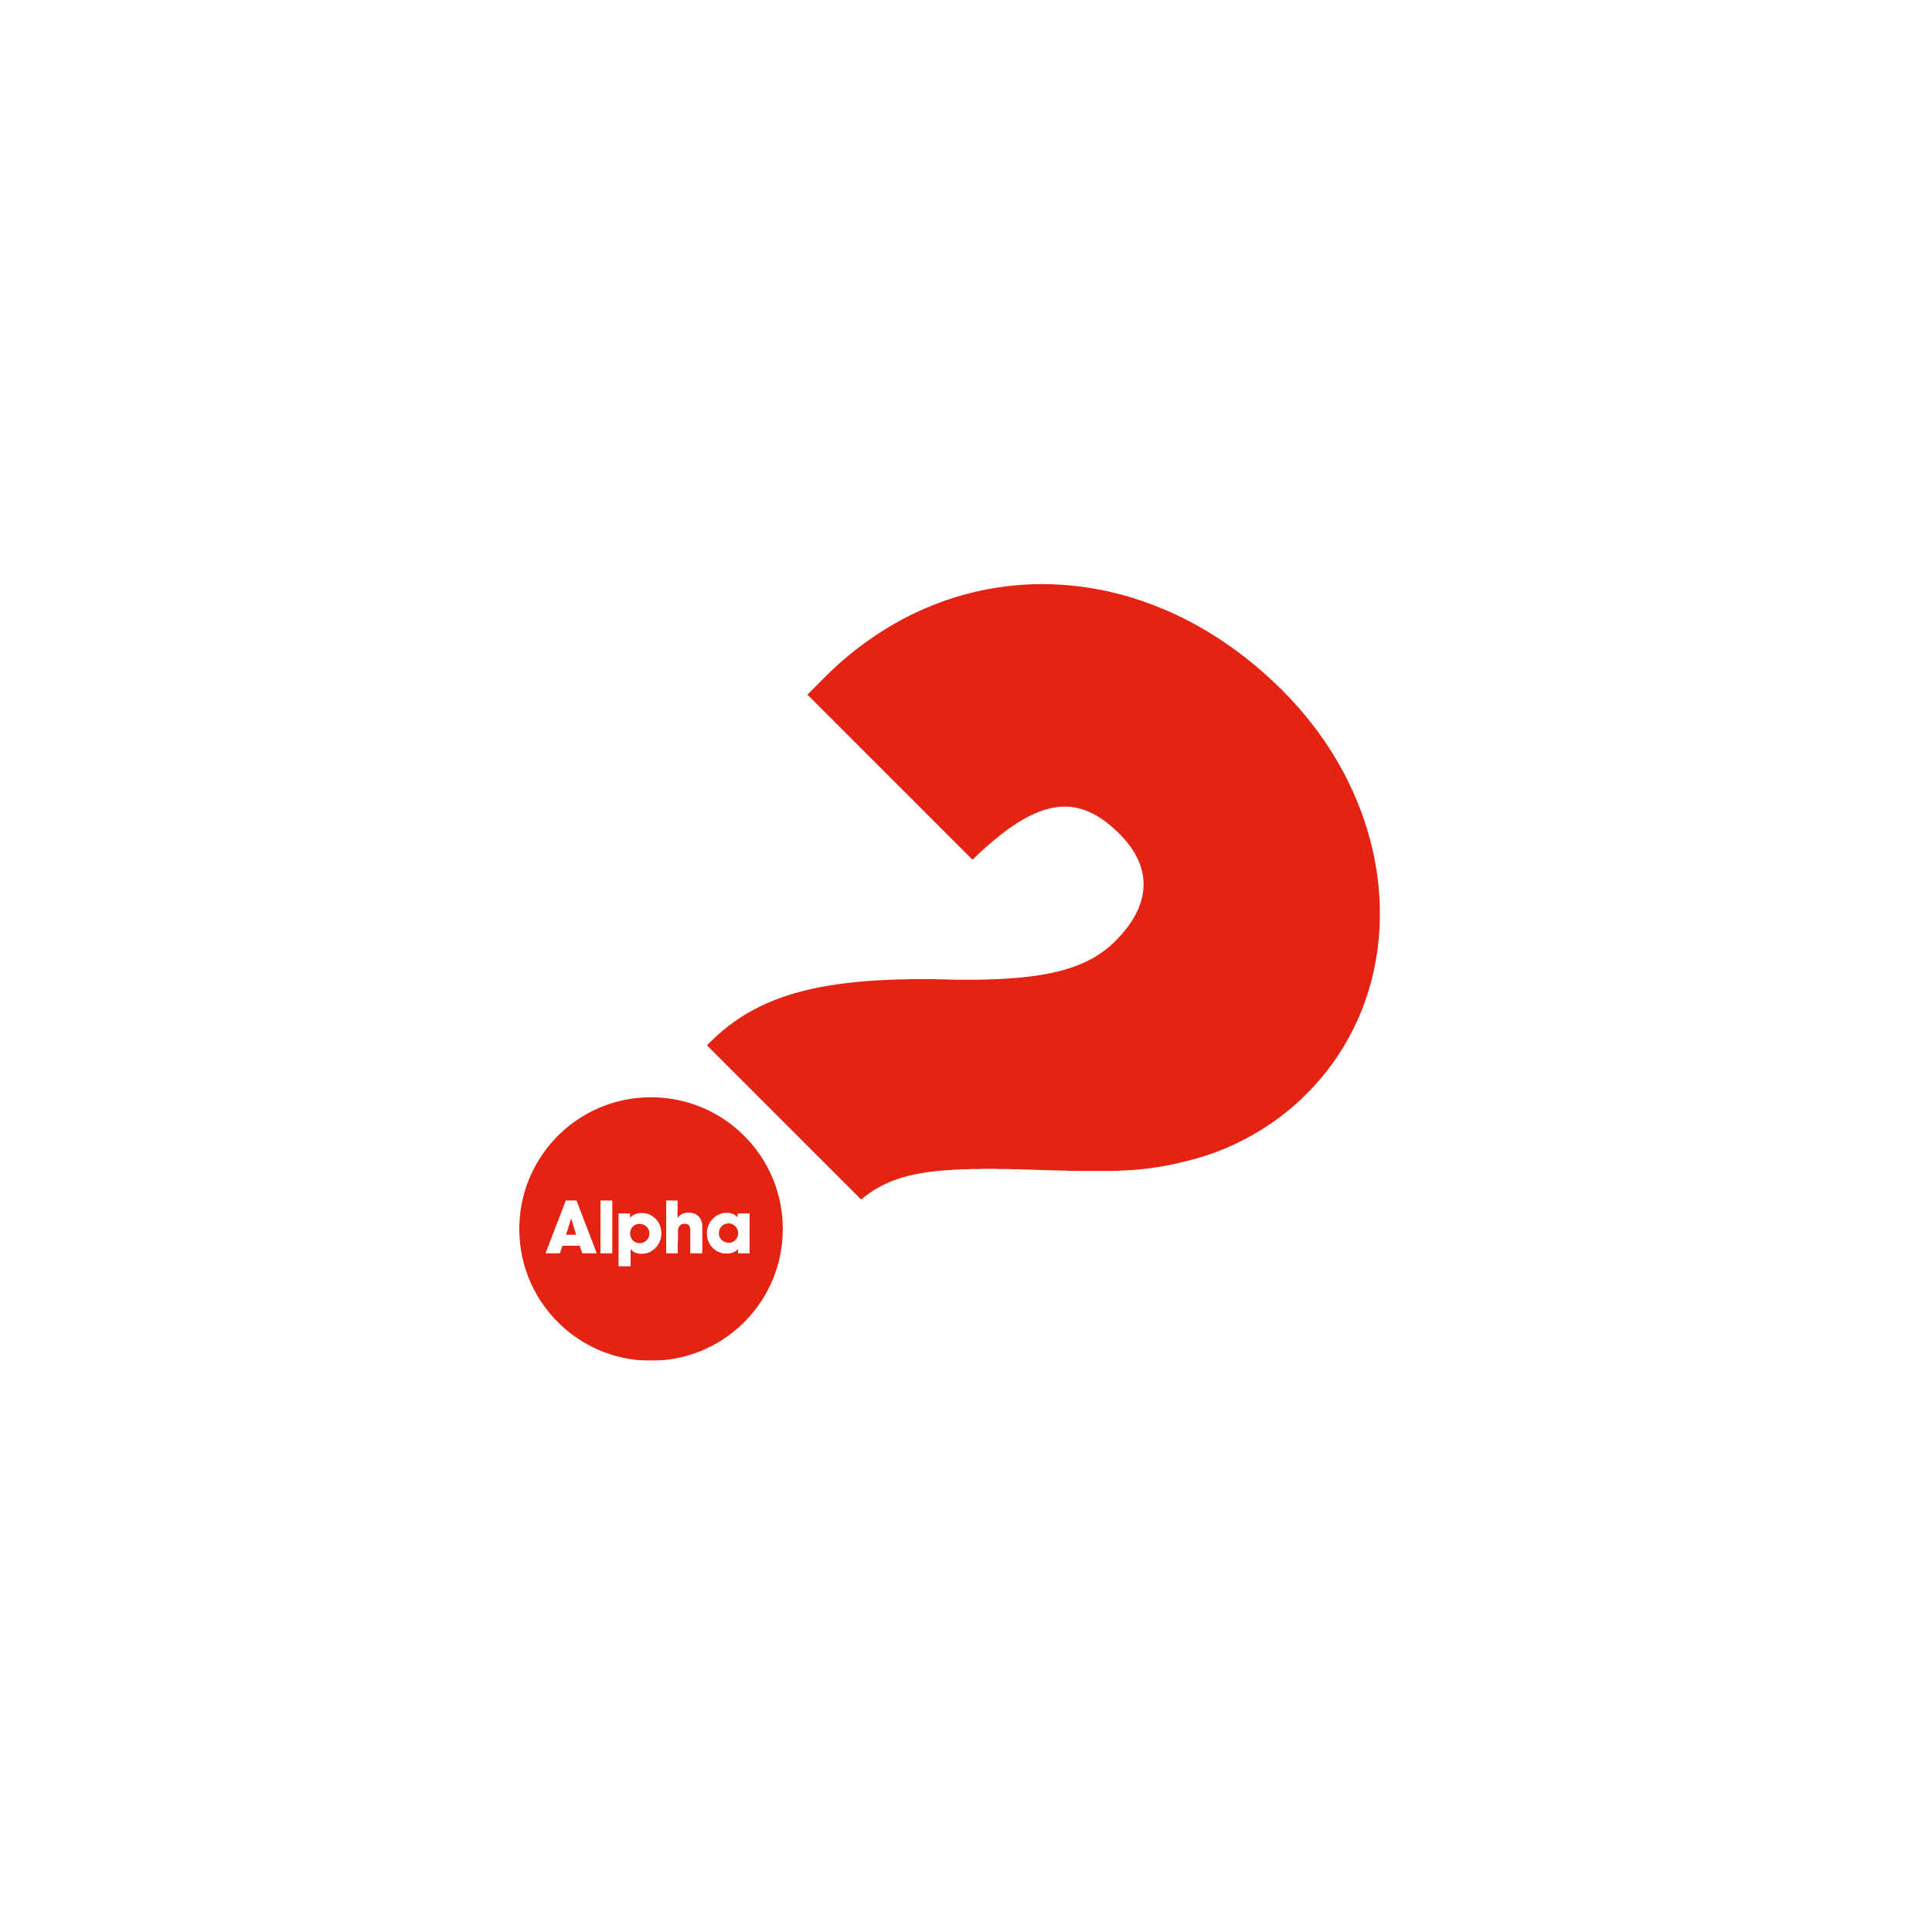 Alfa-logo eli punainen kysymysmerkki, jonka sisällä sana Alpha.